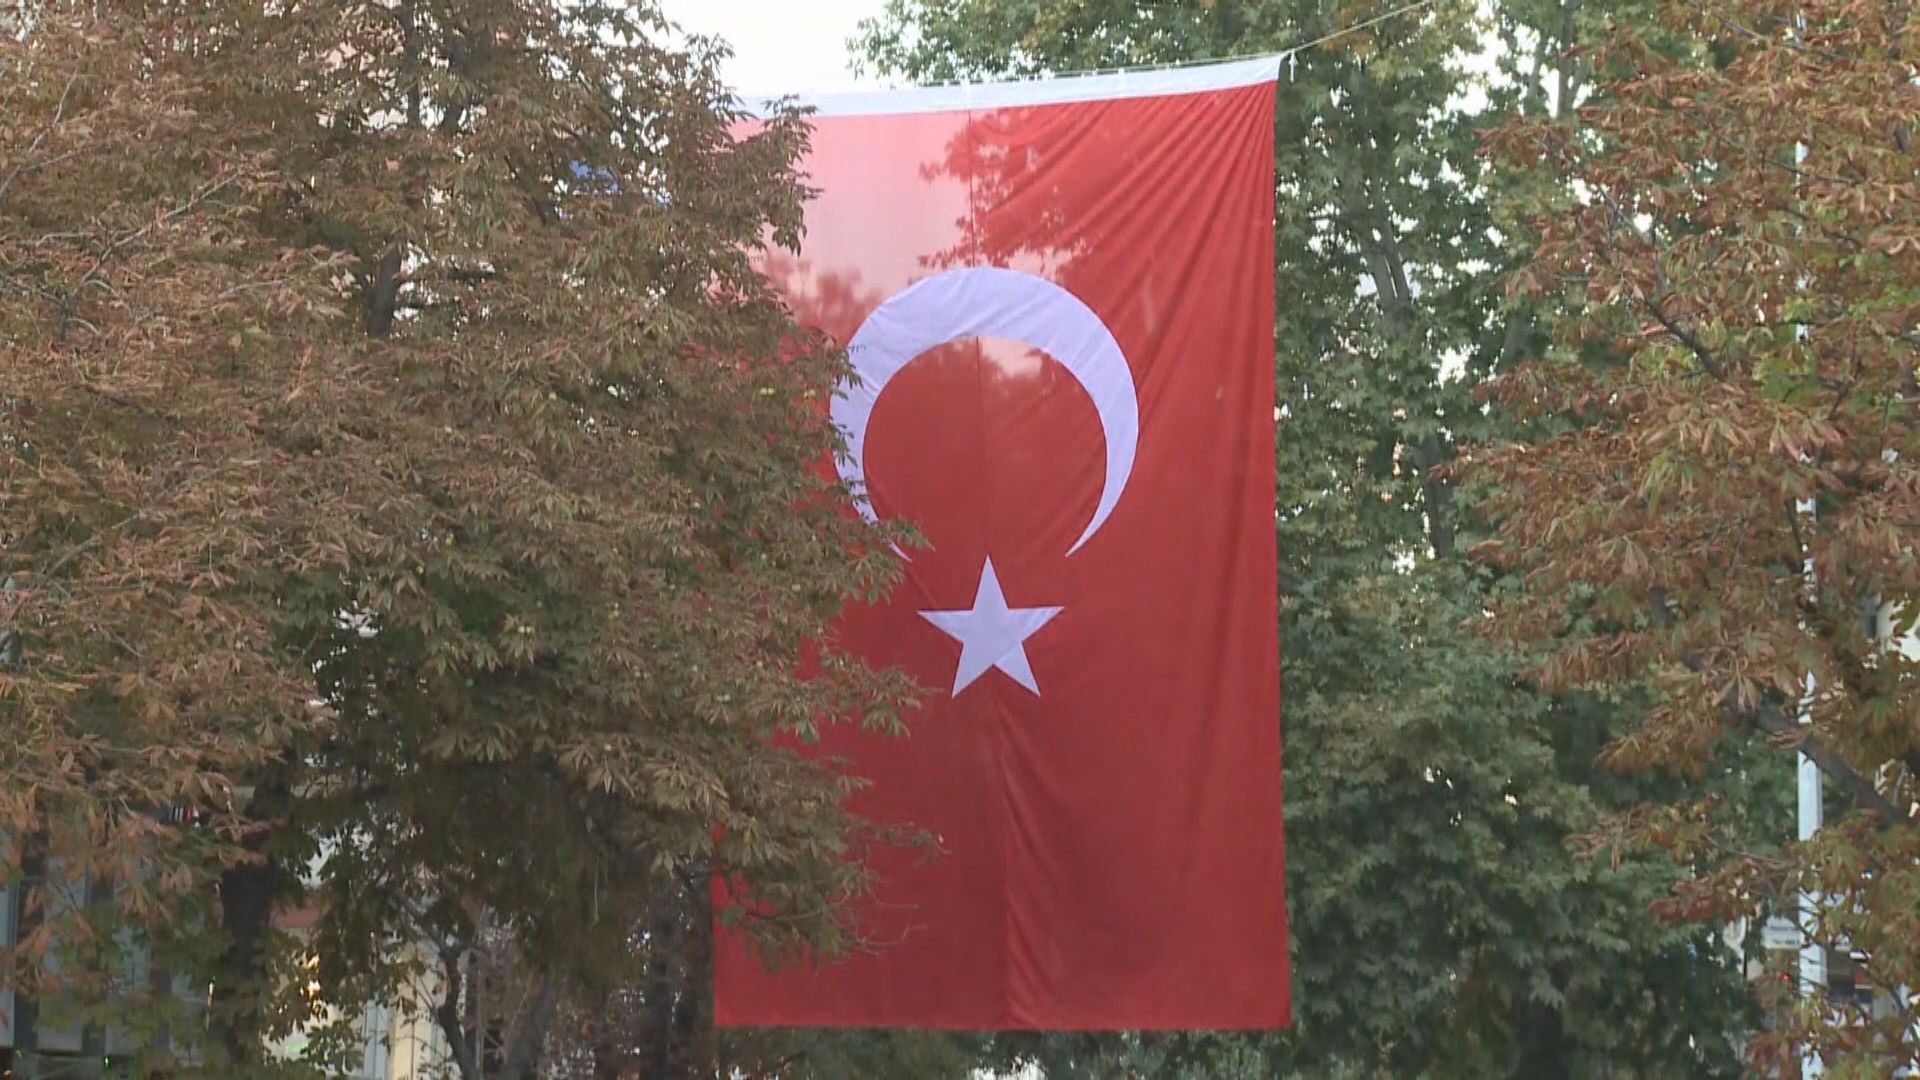 芬蘭瑞典官員周三到訪土耳其嘗試化解分歧